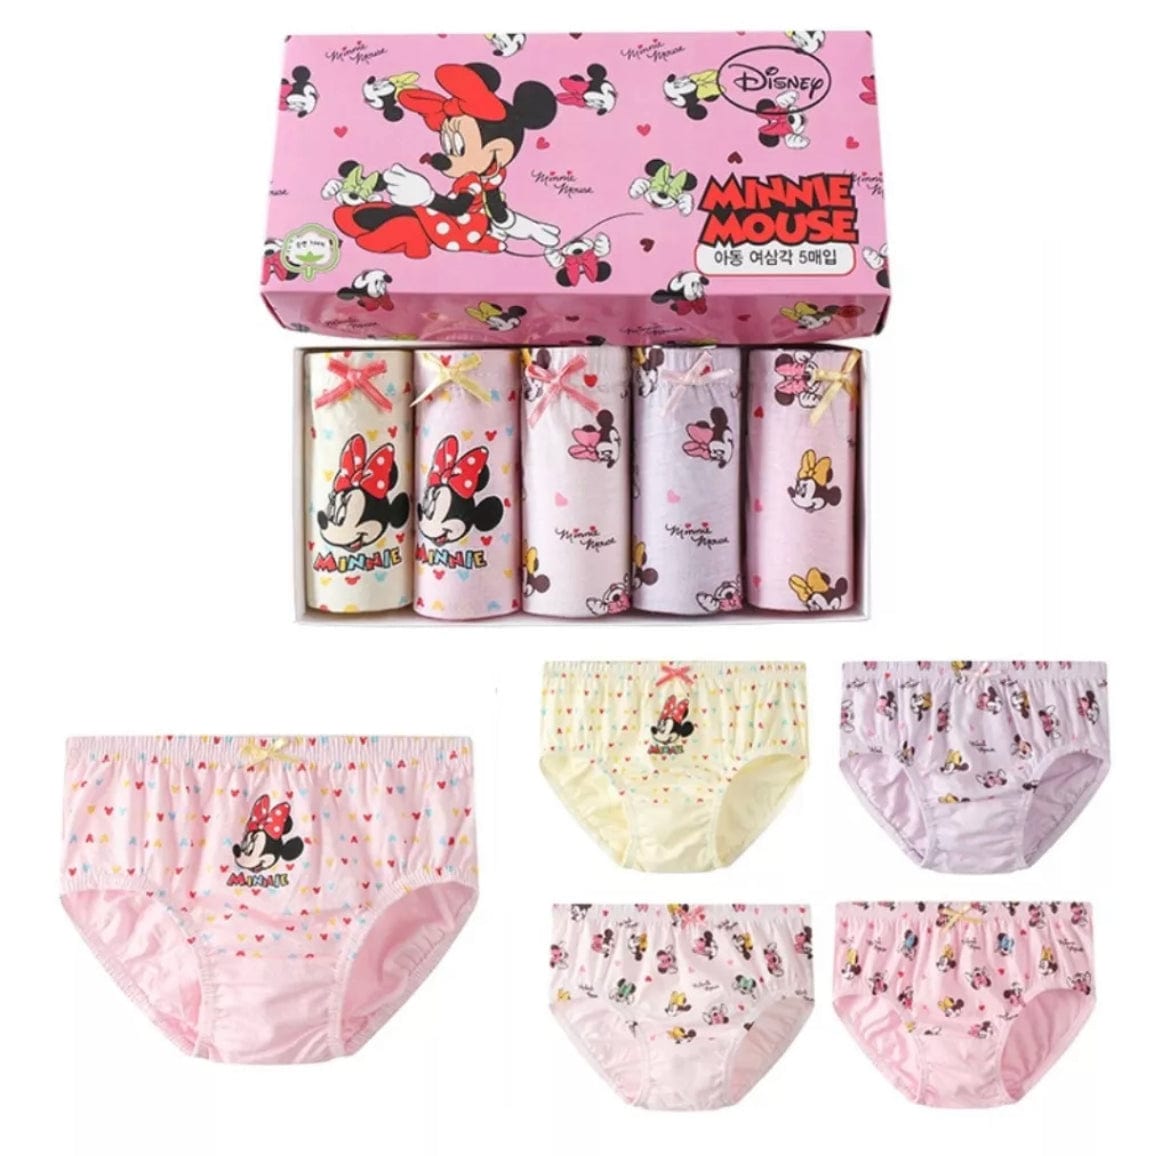 Minnie Mouse Cotton Undies (5pc Pack)